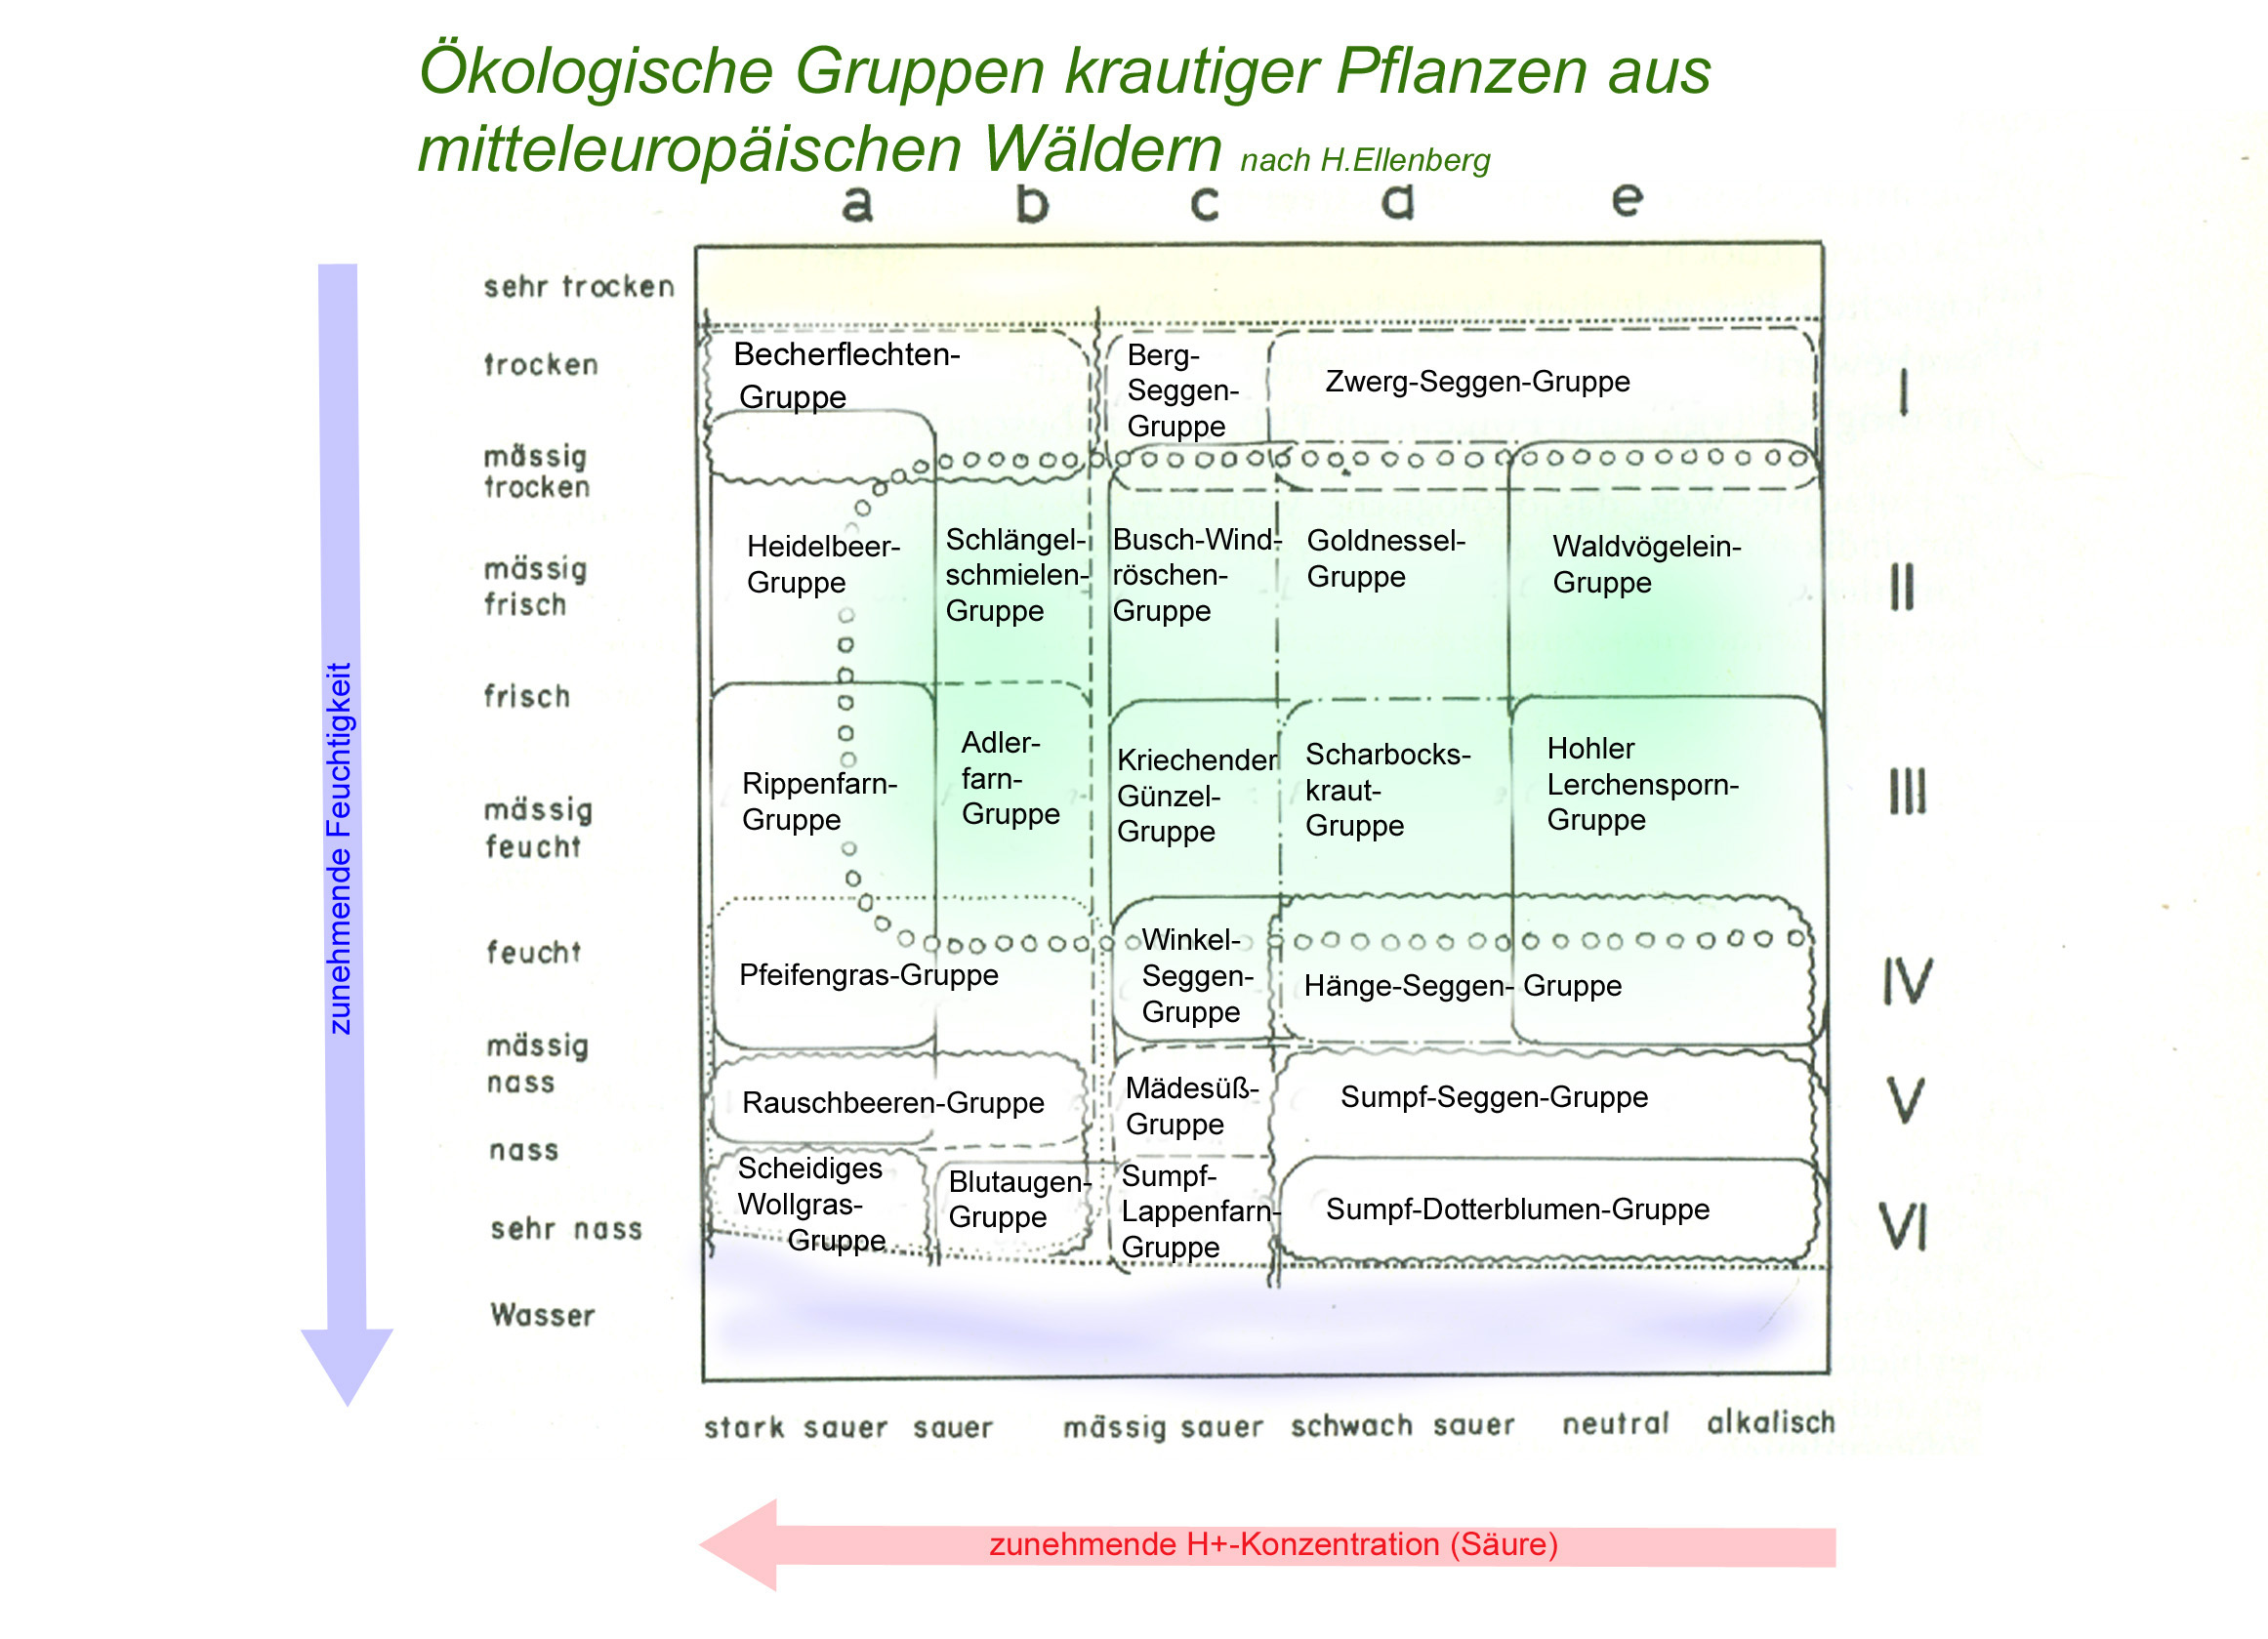 Ökologische Gruppen der Waldbodenpflanzen (nach H.Ellenberg)